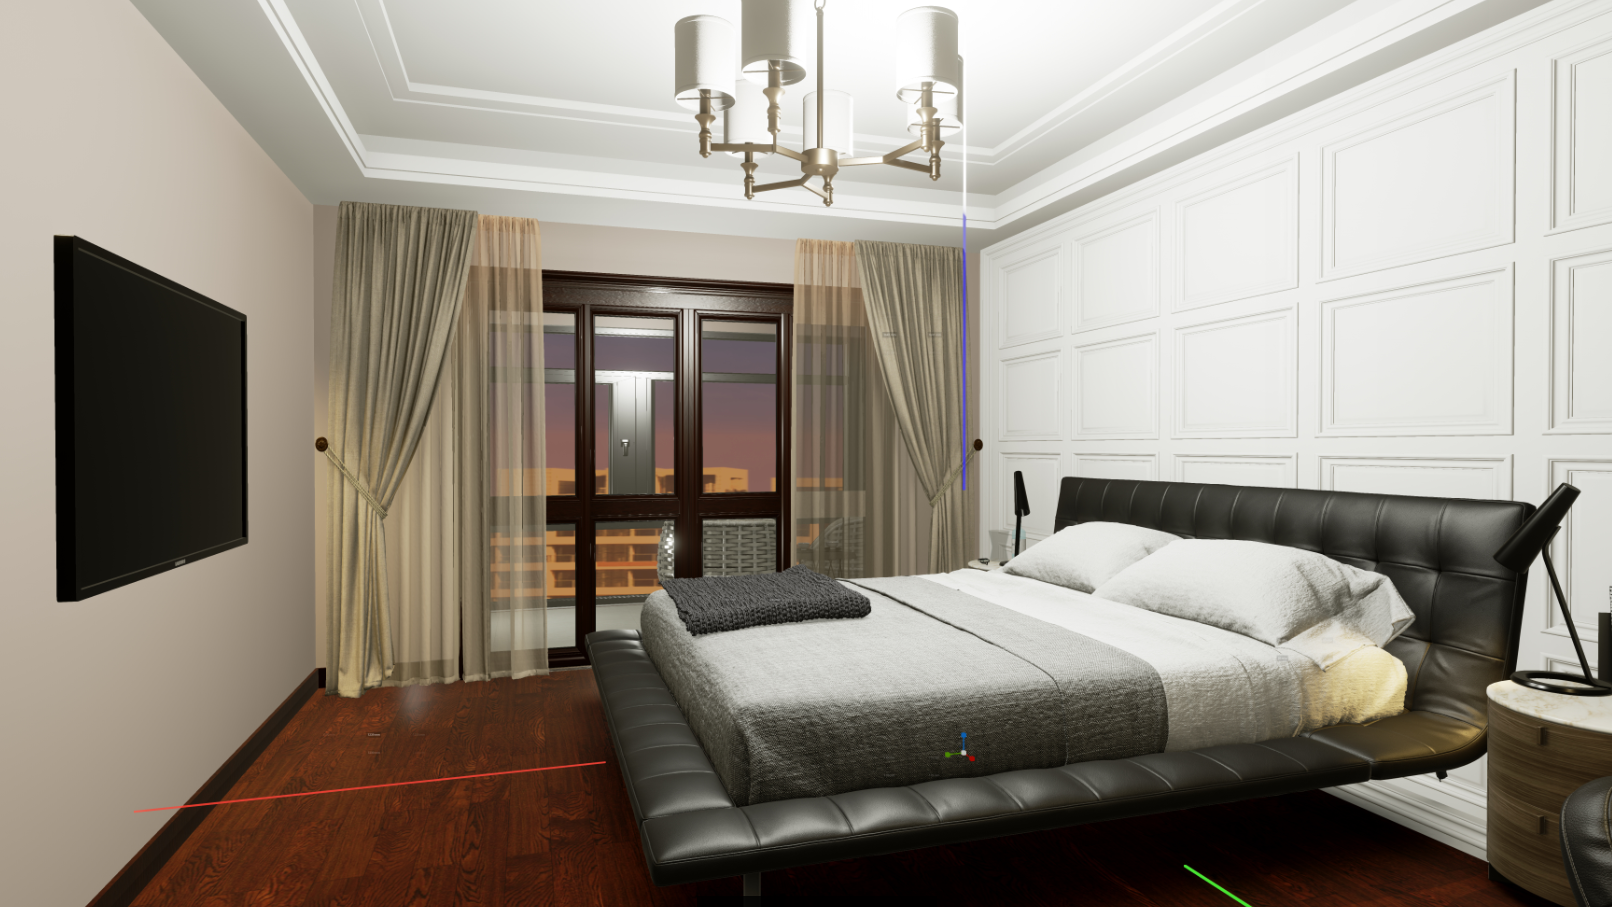 简约 白领 卧室图片来自湖北省大唐安盛建筑工程有限公司在顶秀西北湖的分享